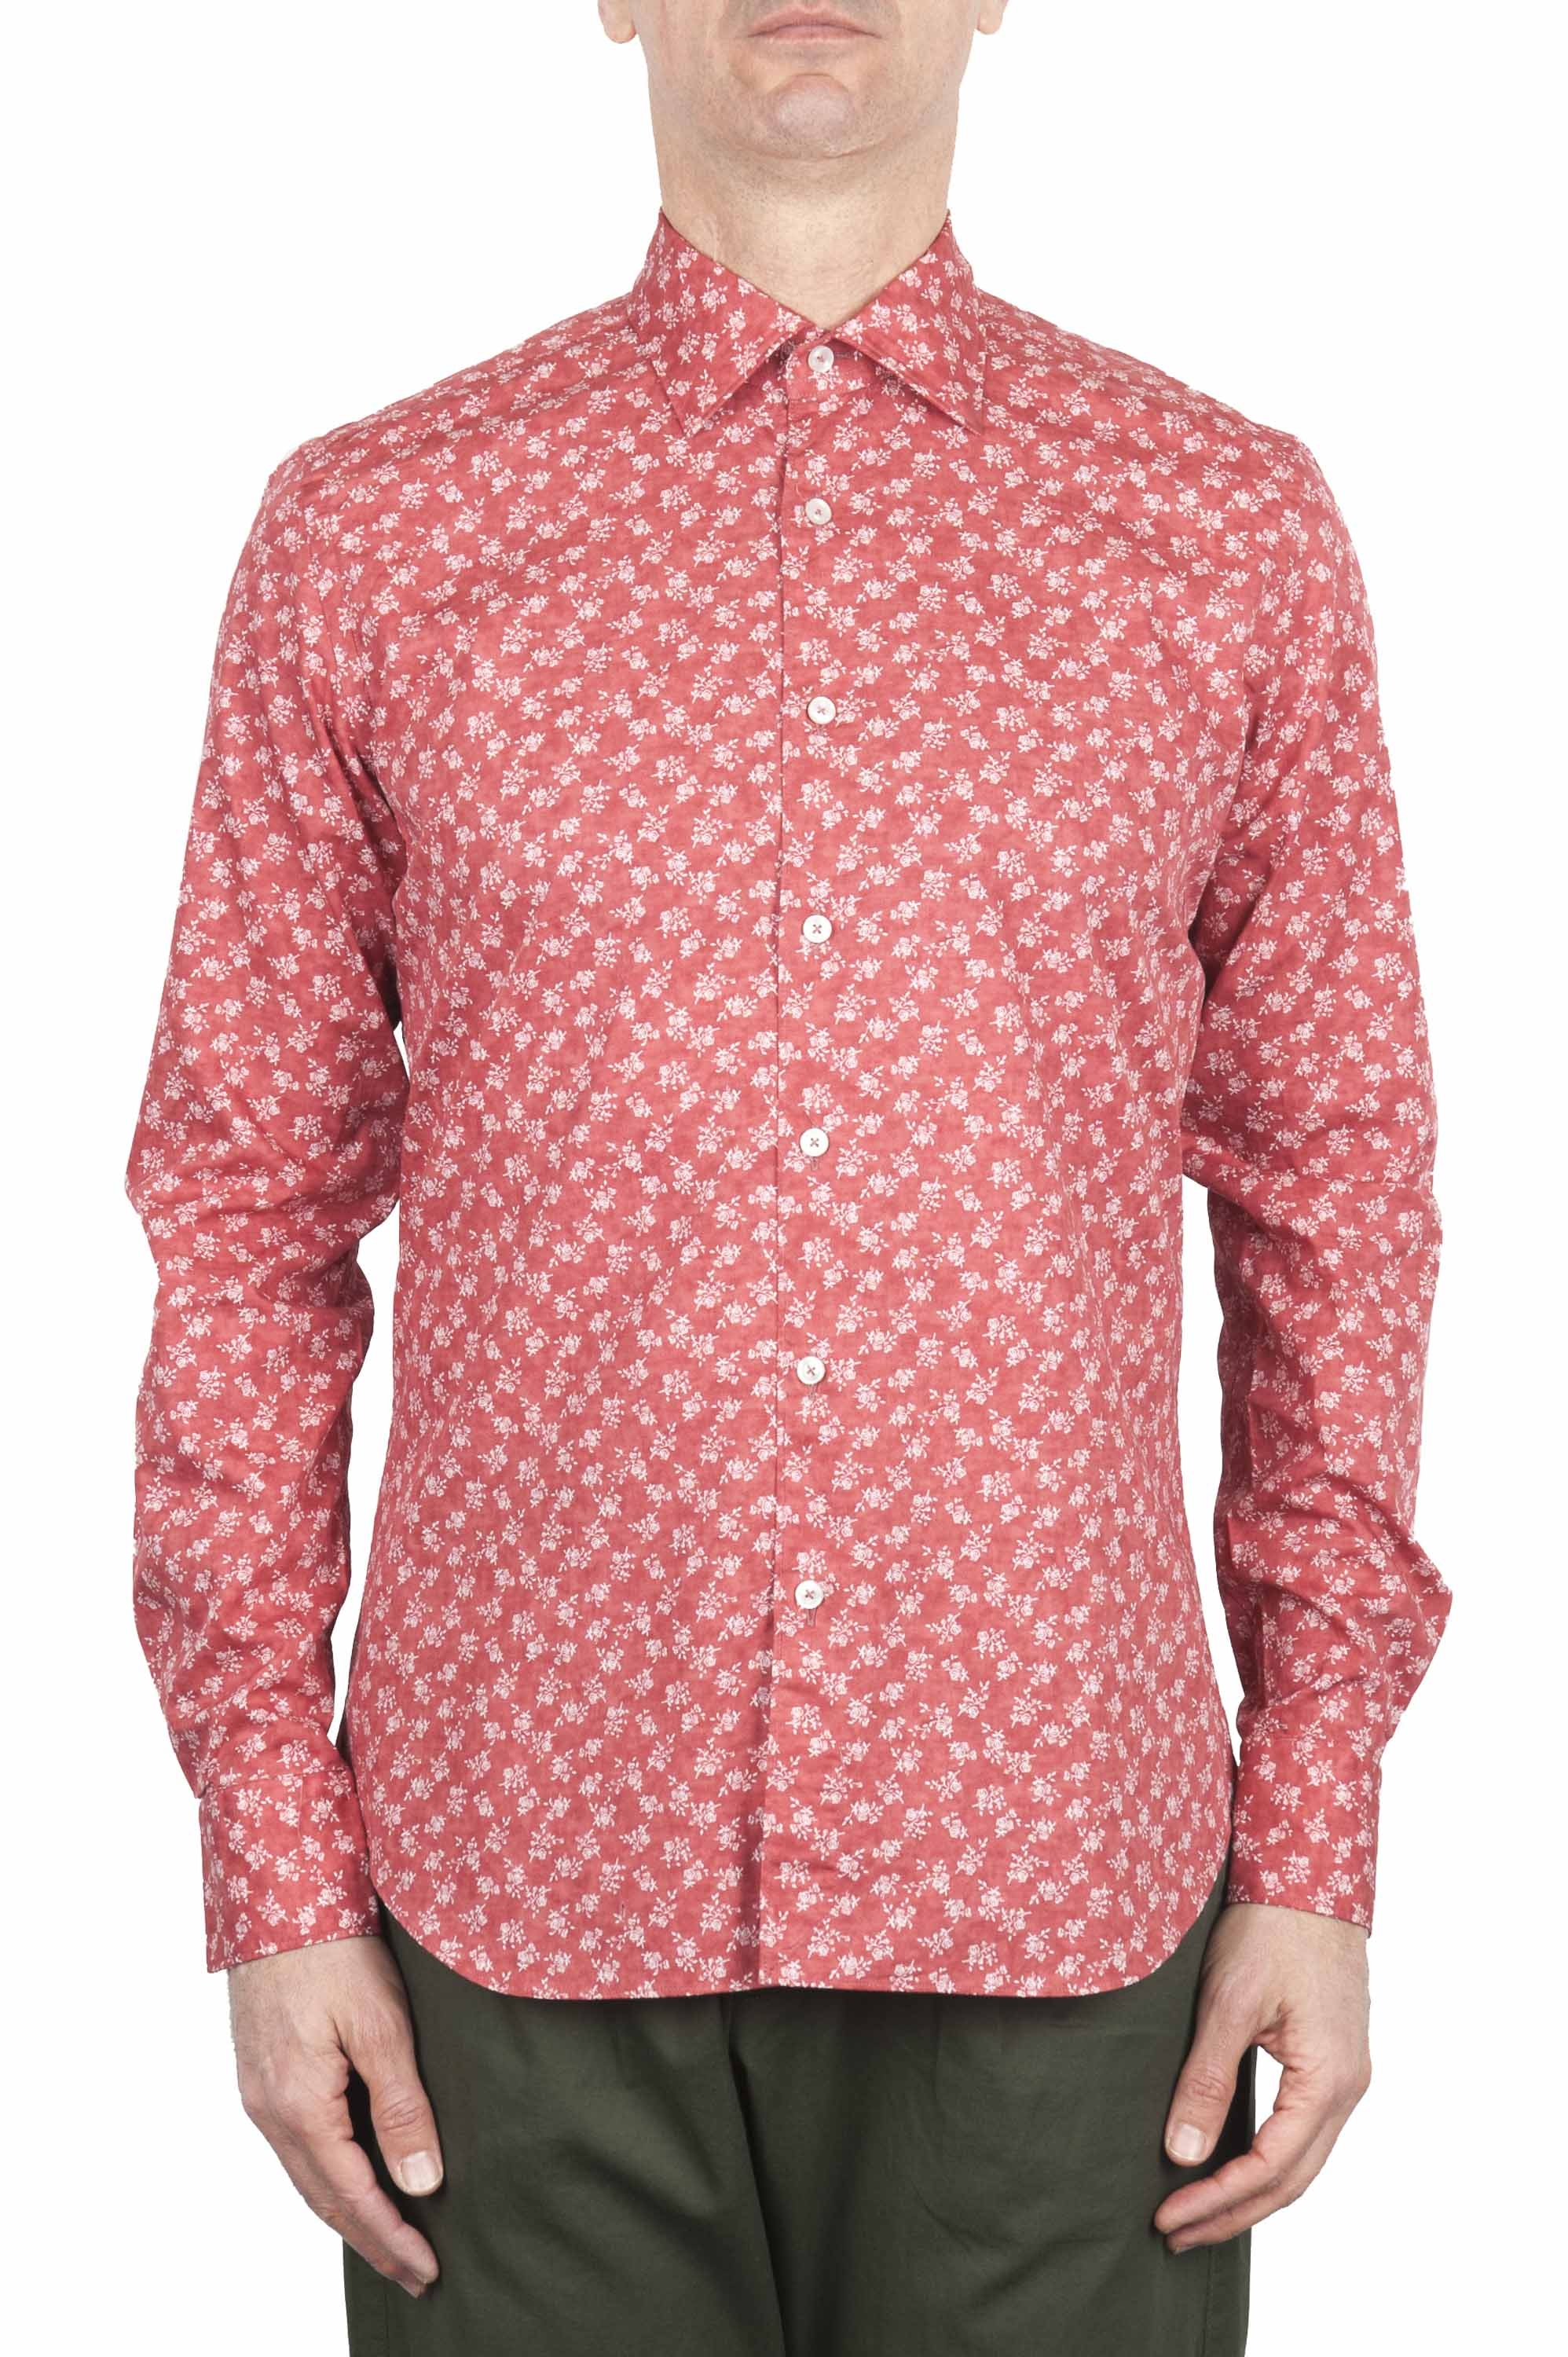 SBU 01604 Floral printed pattern red cotton shirt 01